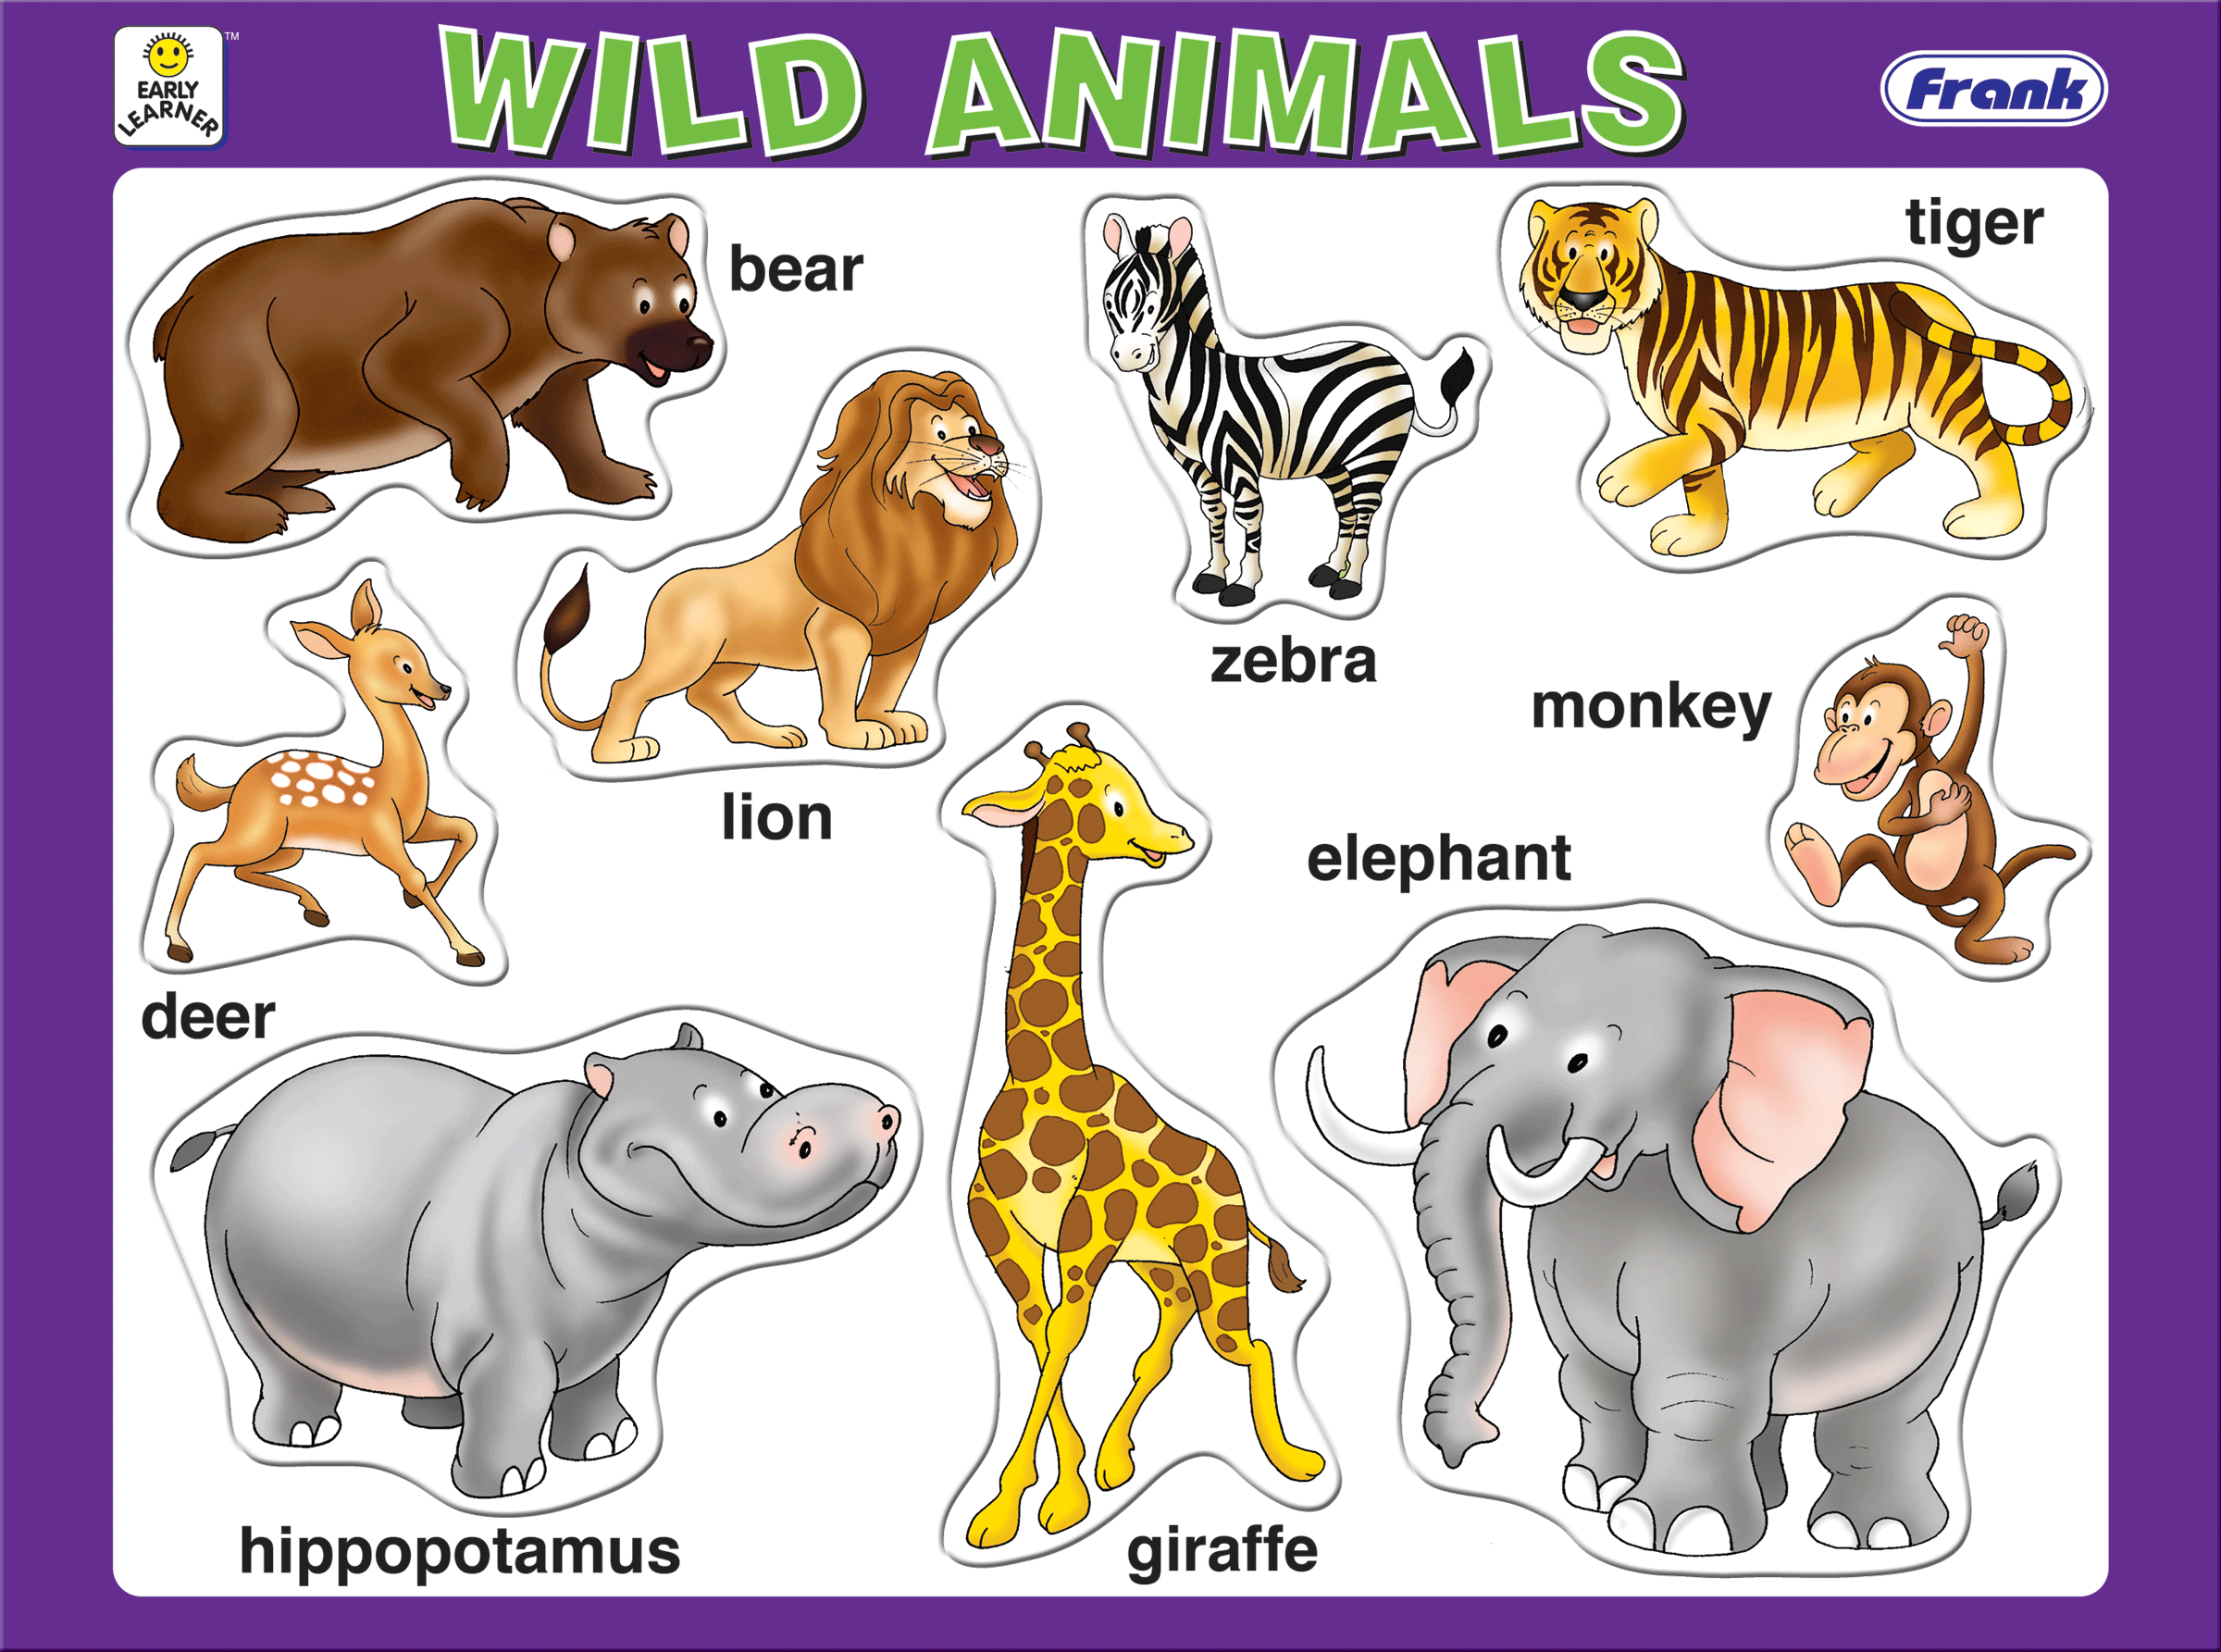 Английский язык 2 класс animals. Для детей. Животные. Животные на английском для детей. Дикие животные на английском для детей. Изображения животных для детей.